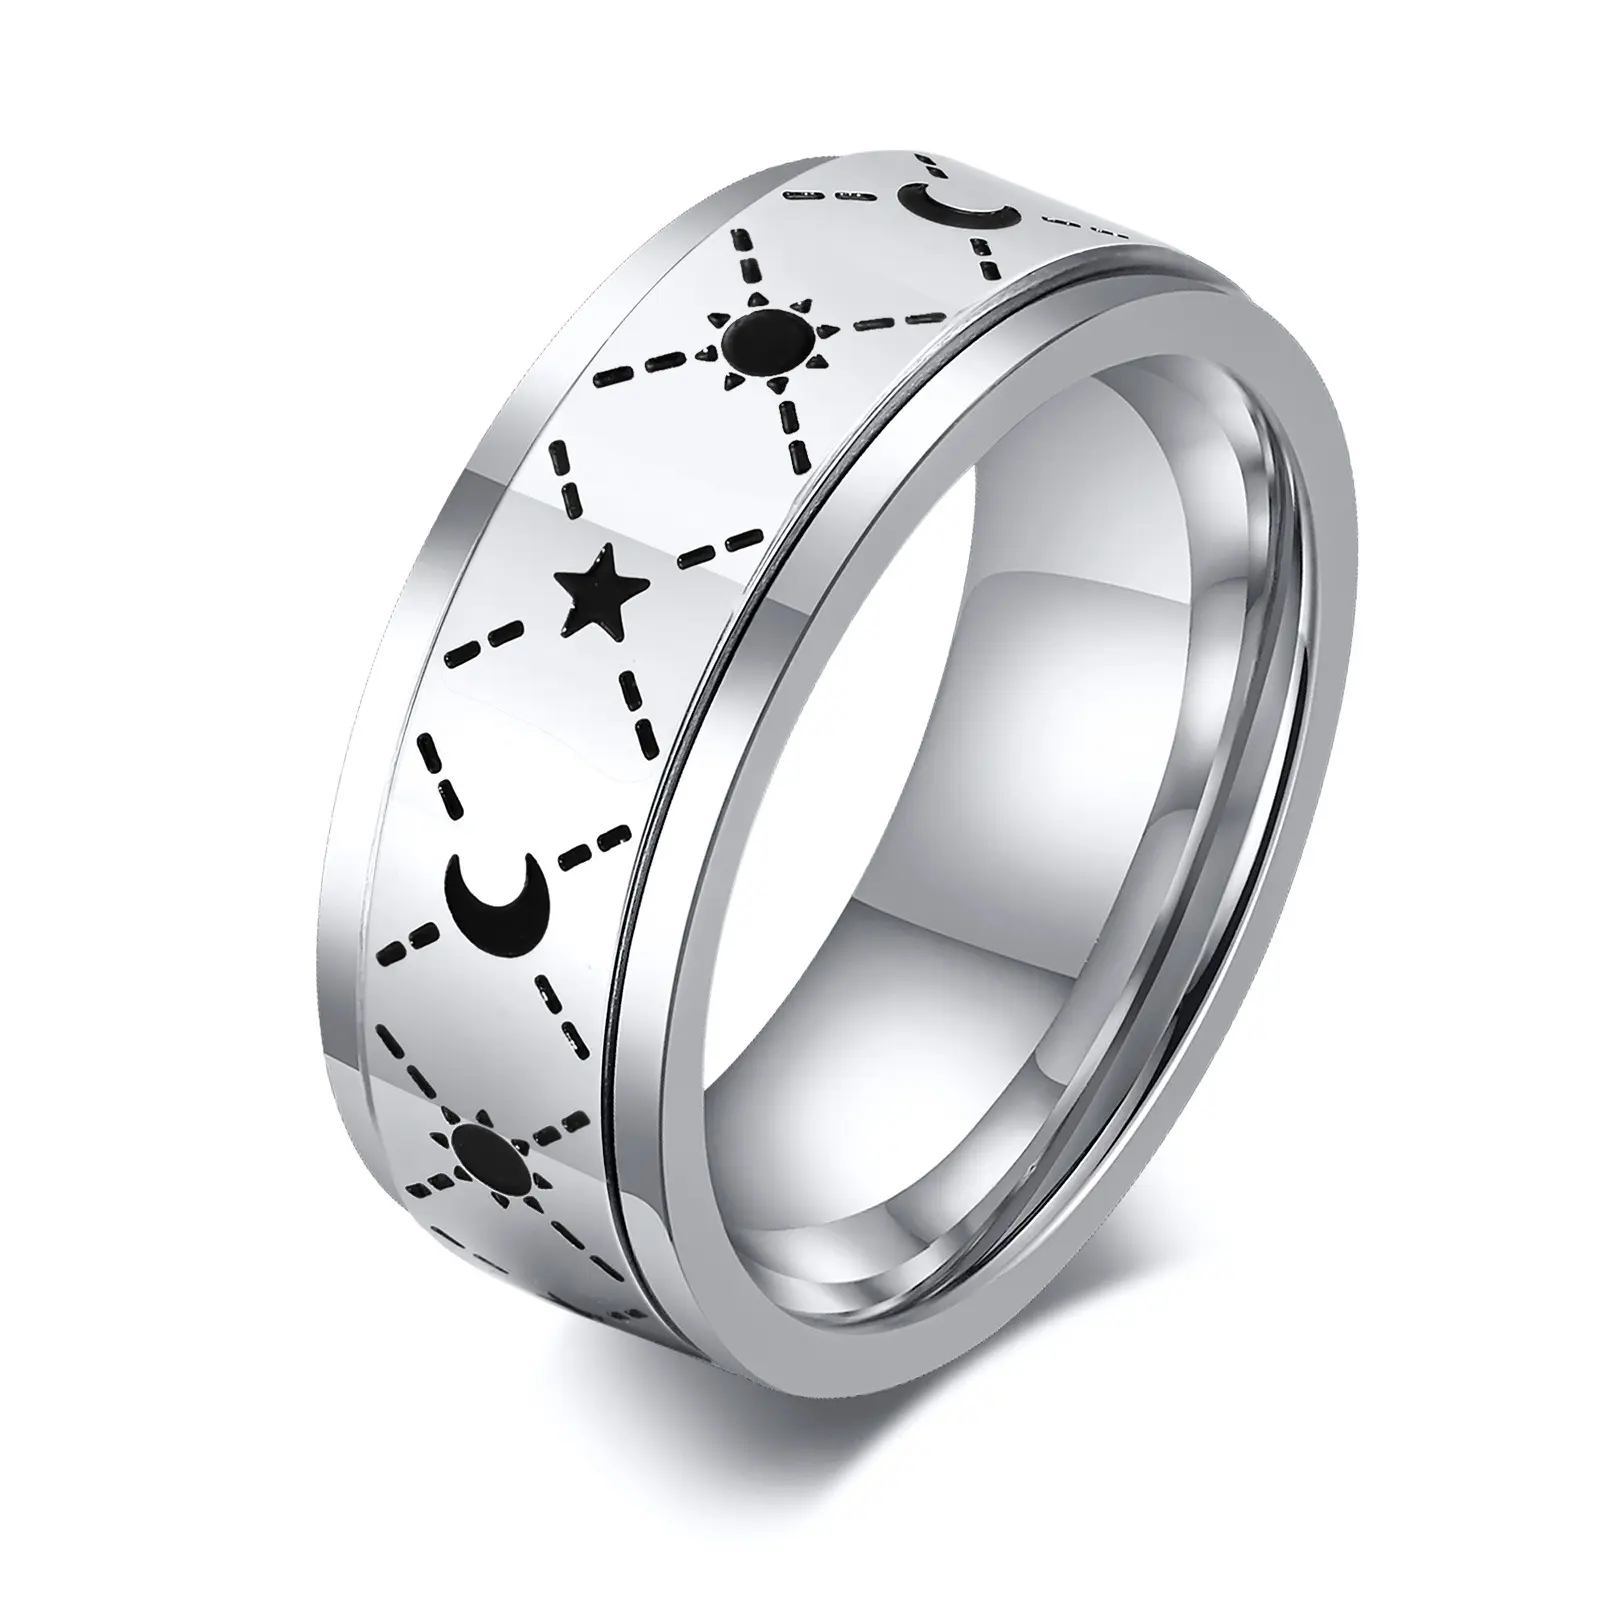 8mm Anti Stress in acciaio inox luna e stelle anelli per coppie Fidget Spinner in metallo ruotare liberamente ansia anello di controllo gioielli